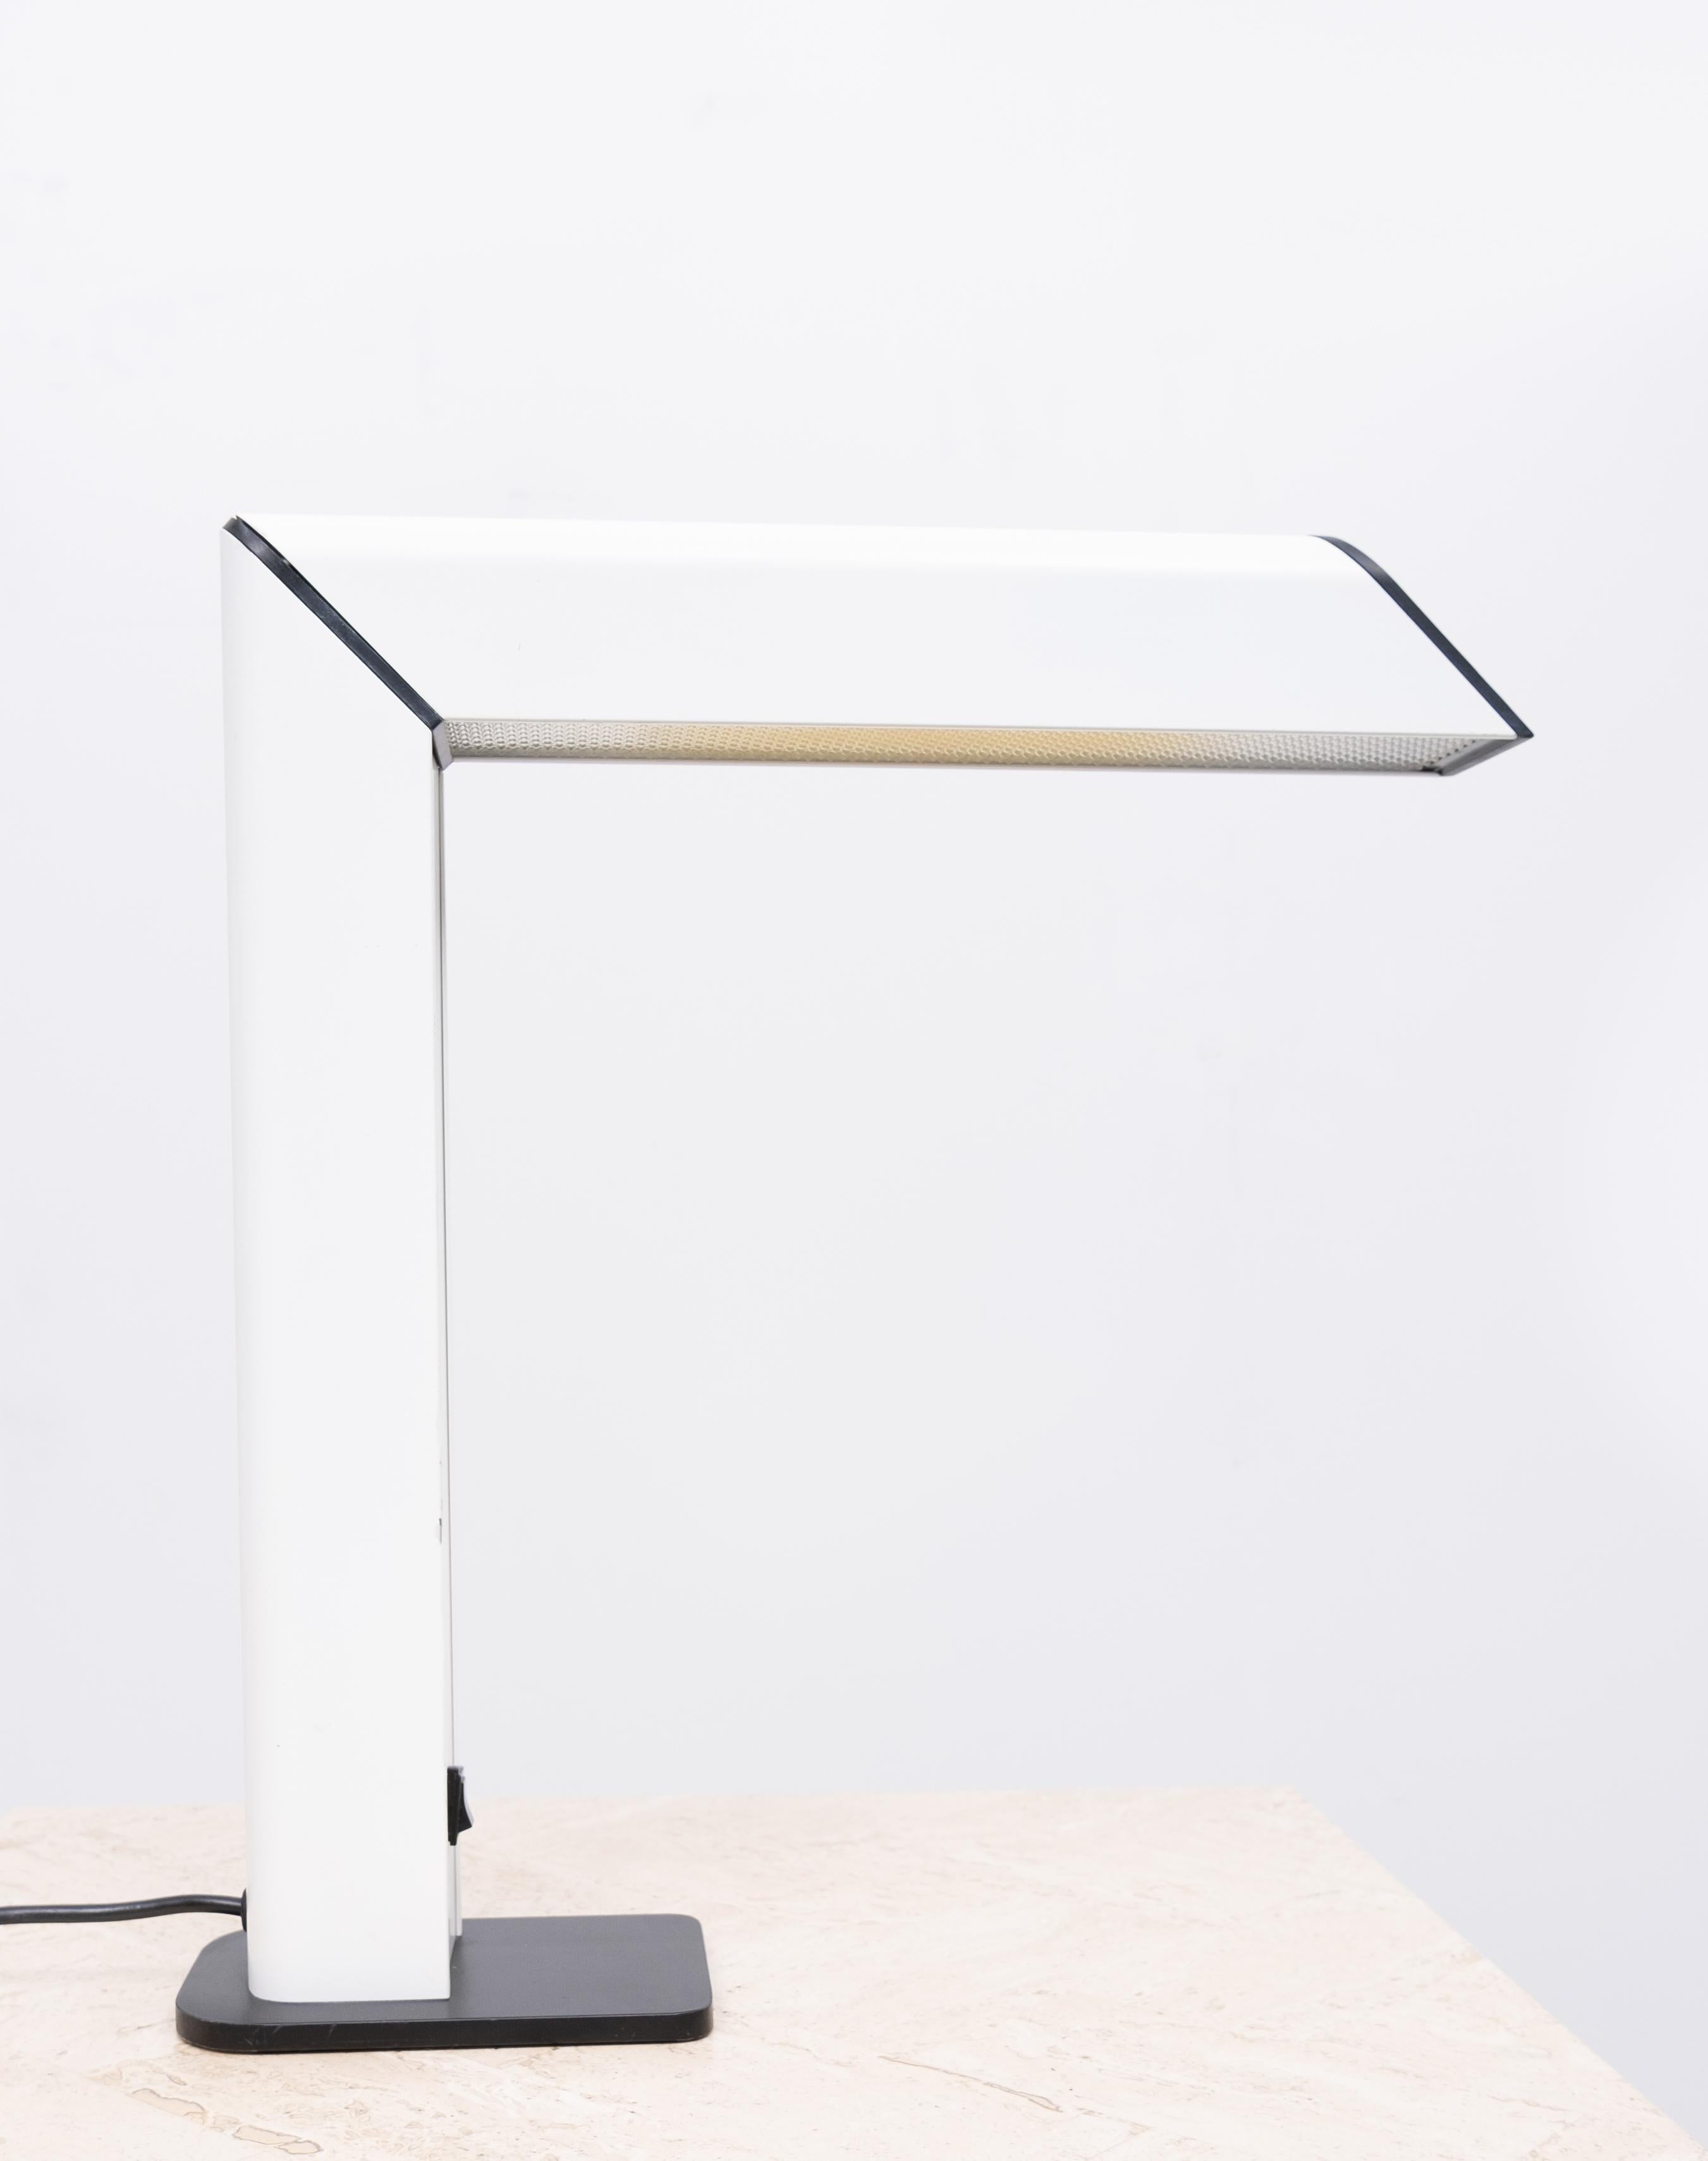 Lampe de bureau de forme carrée typique des années 80, en plastique blanc sur une base en métal noir.
Éclairage tubulaire en bon état de fonctionnement.
 
   